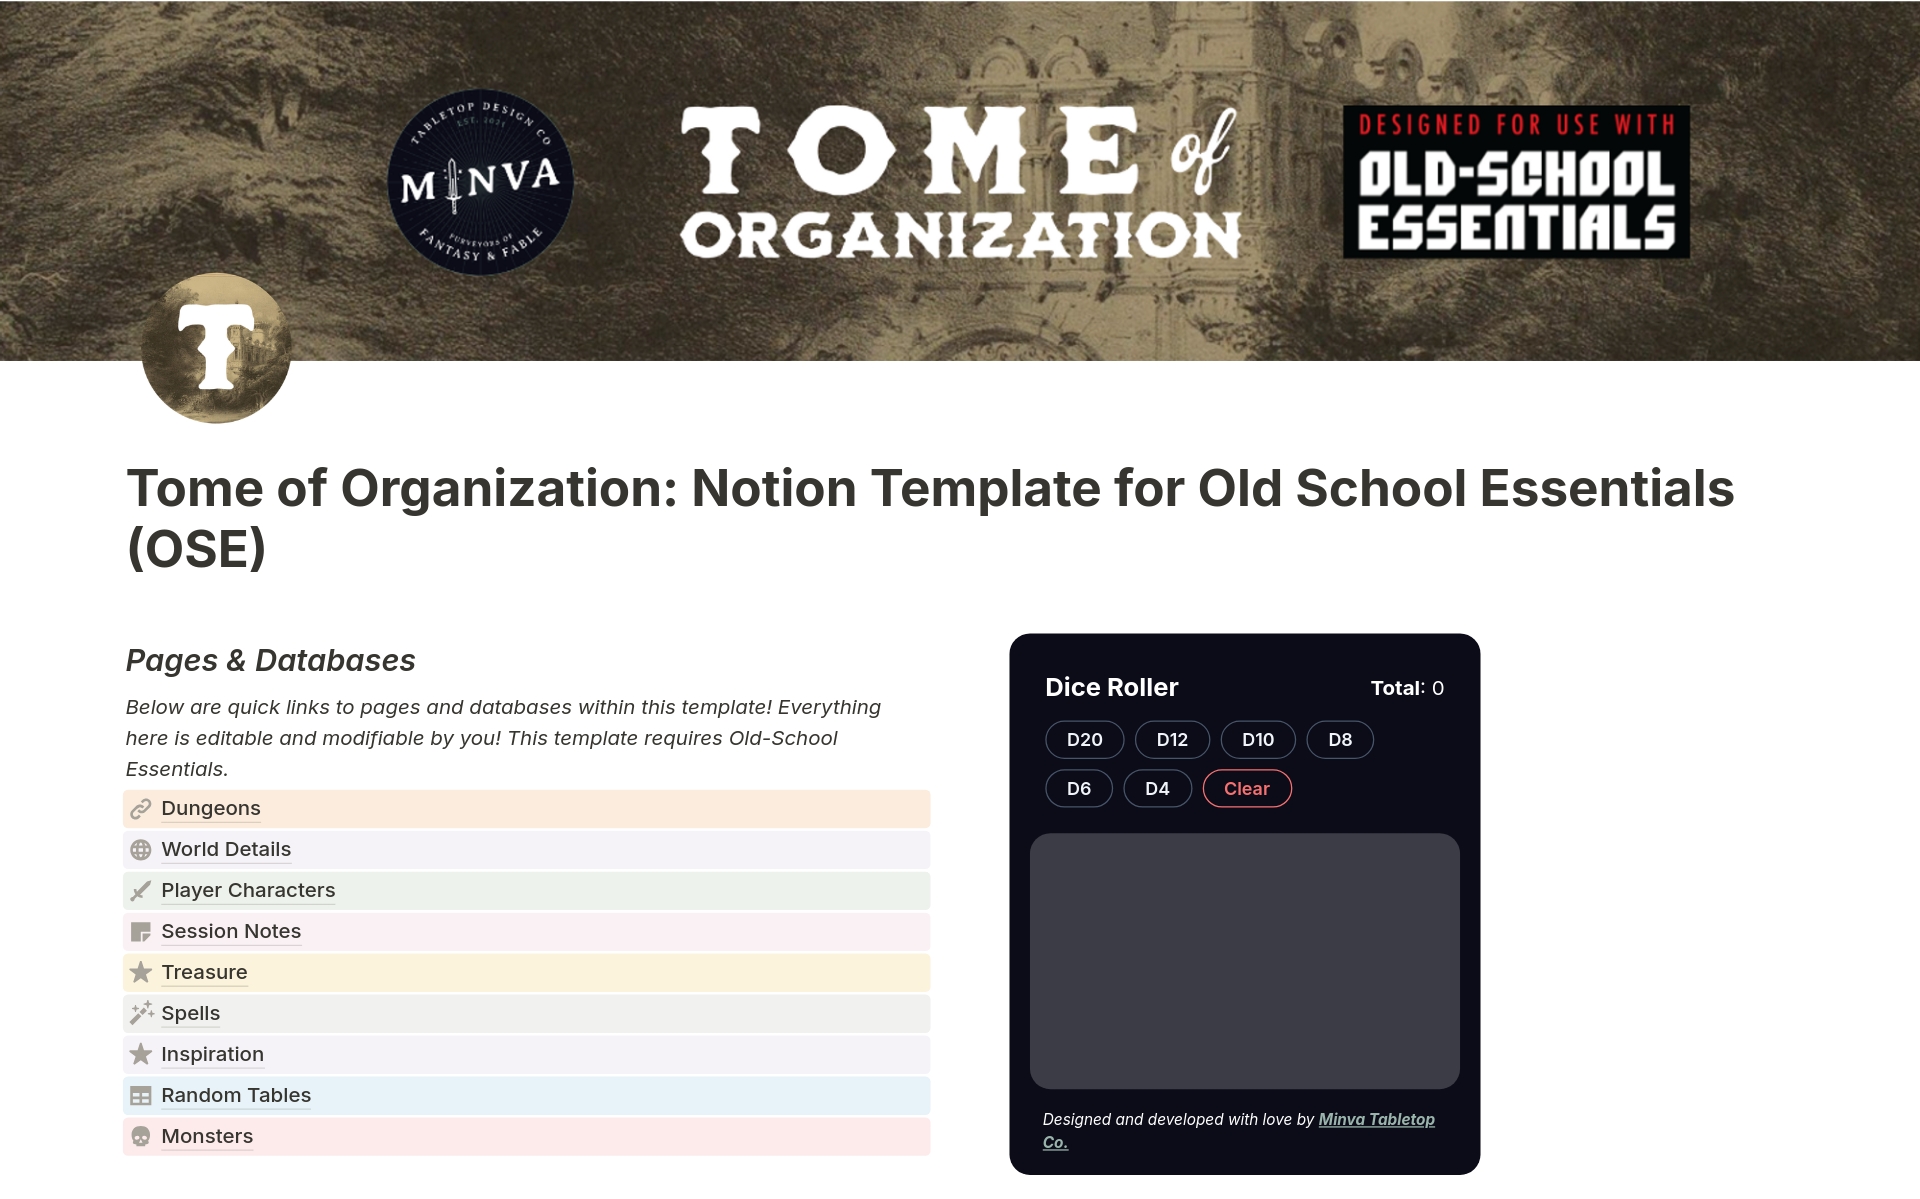 Uma prévia do modelo para Tome of Organization for Old-School Essentials OSE